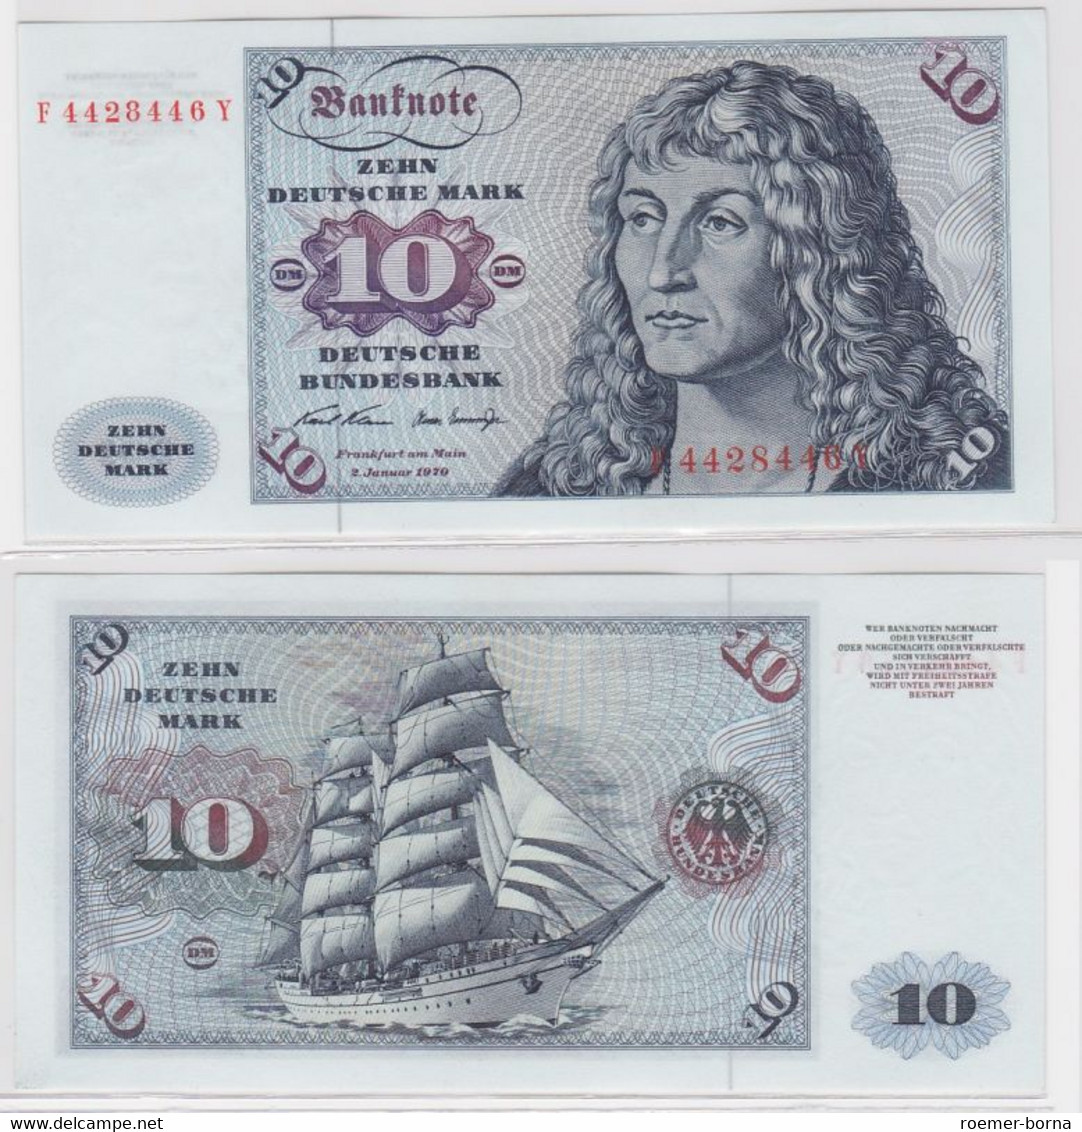 T146531 Banknote 10 DM Deutsche Mark Ro. 270a Schein 2.Jan. 1970 KN F 4428446 Y - 10 DM